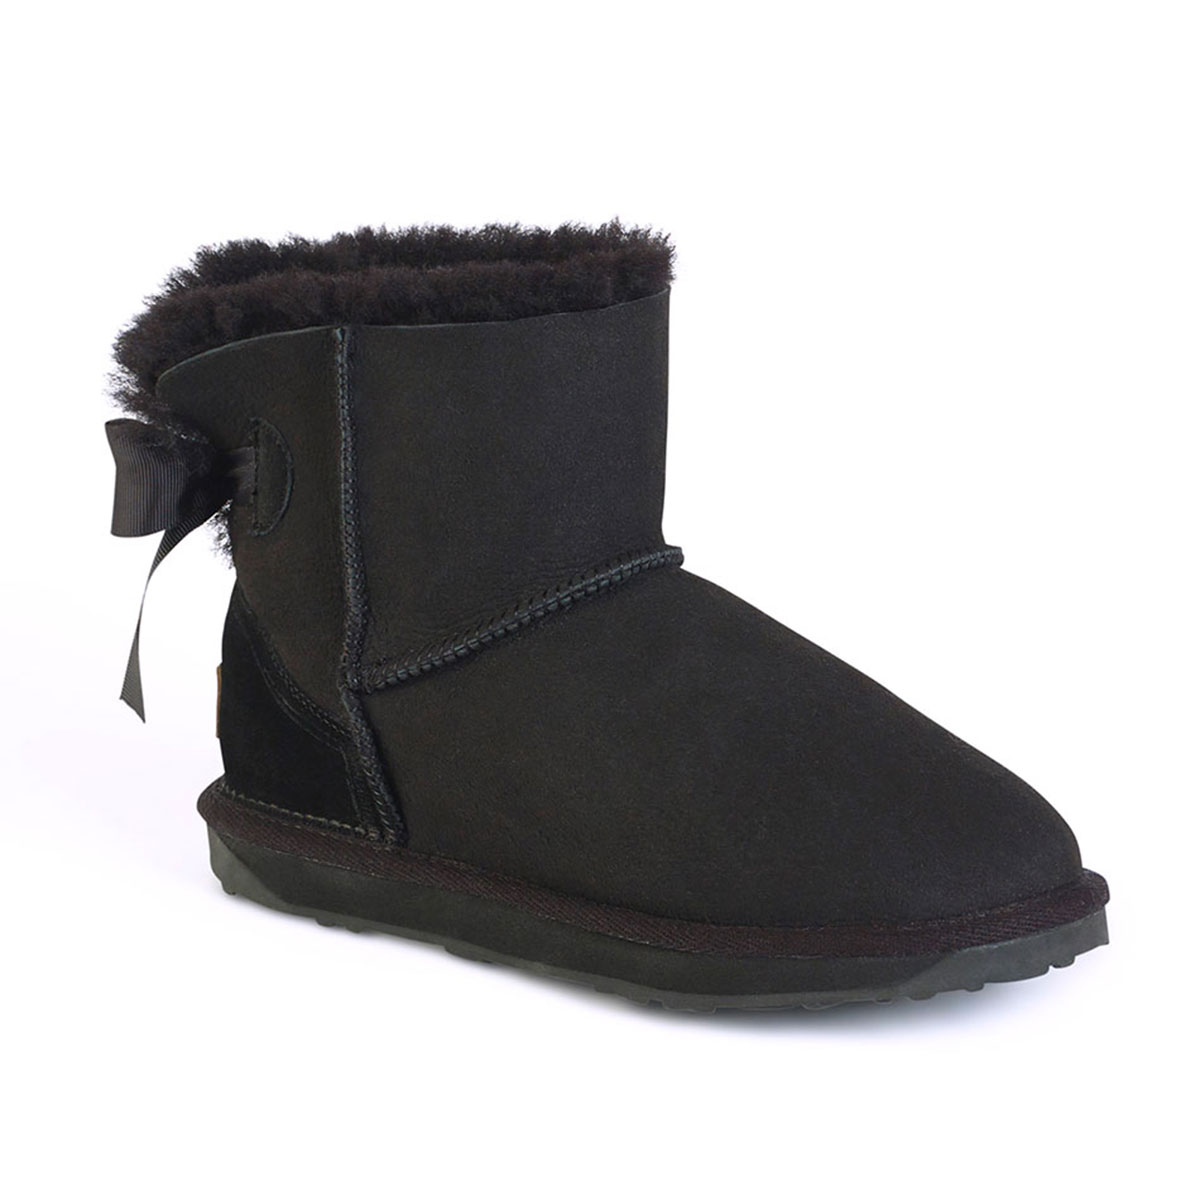 Ladies Devon Sheepskin Boots | Just Sheepskin Slippers and Boots